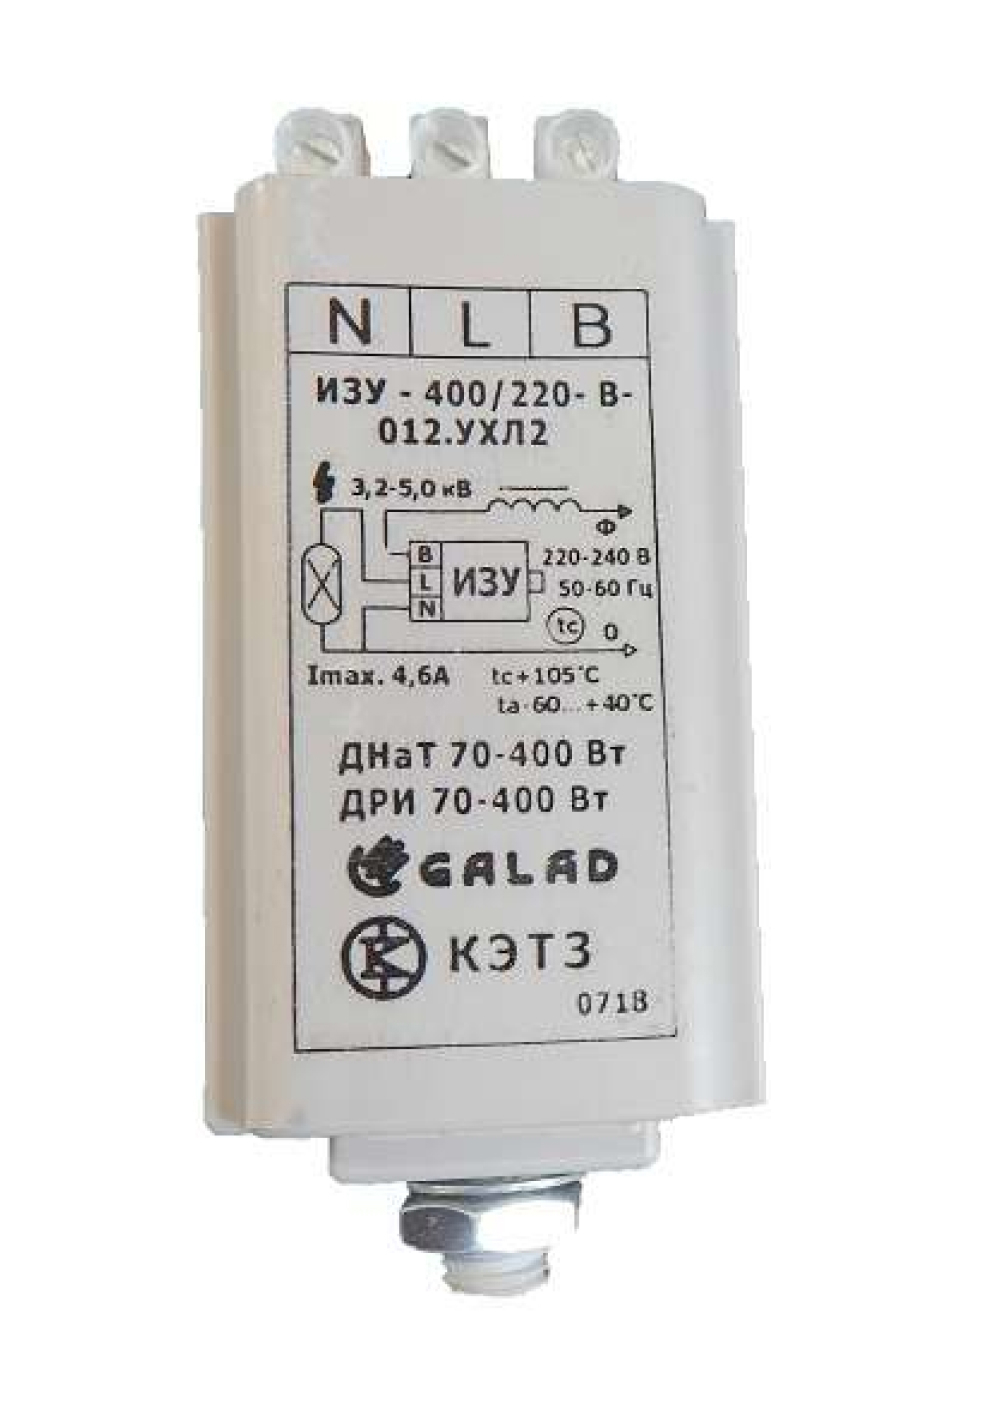 Устройство зажигающее импульсное (ИЗУ) GALAD ИЗУ-400/220-В-012 напряжение 220 В, содержит цветные металлы